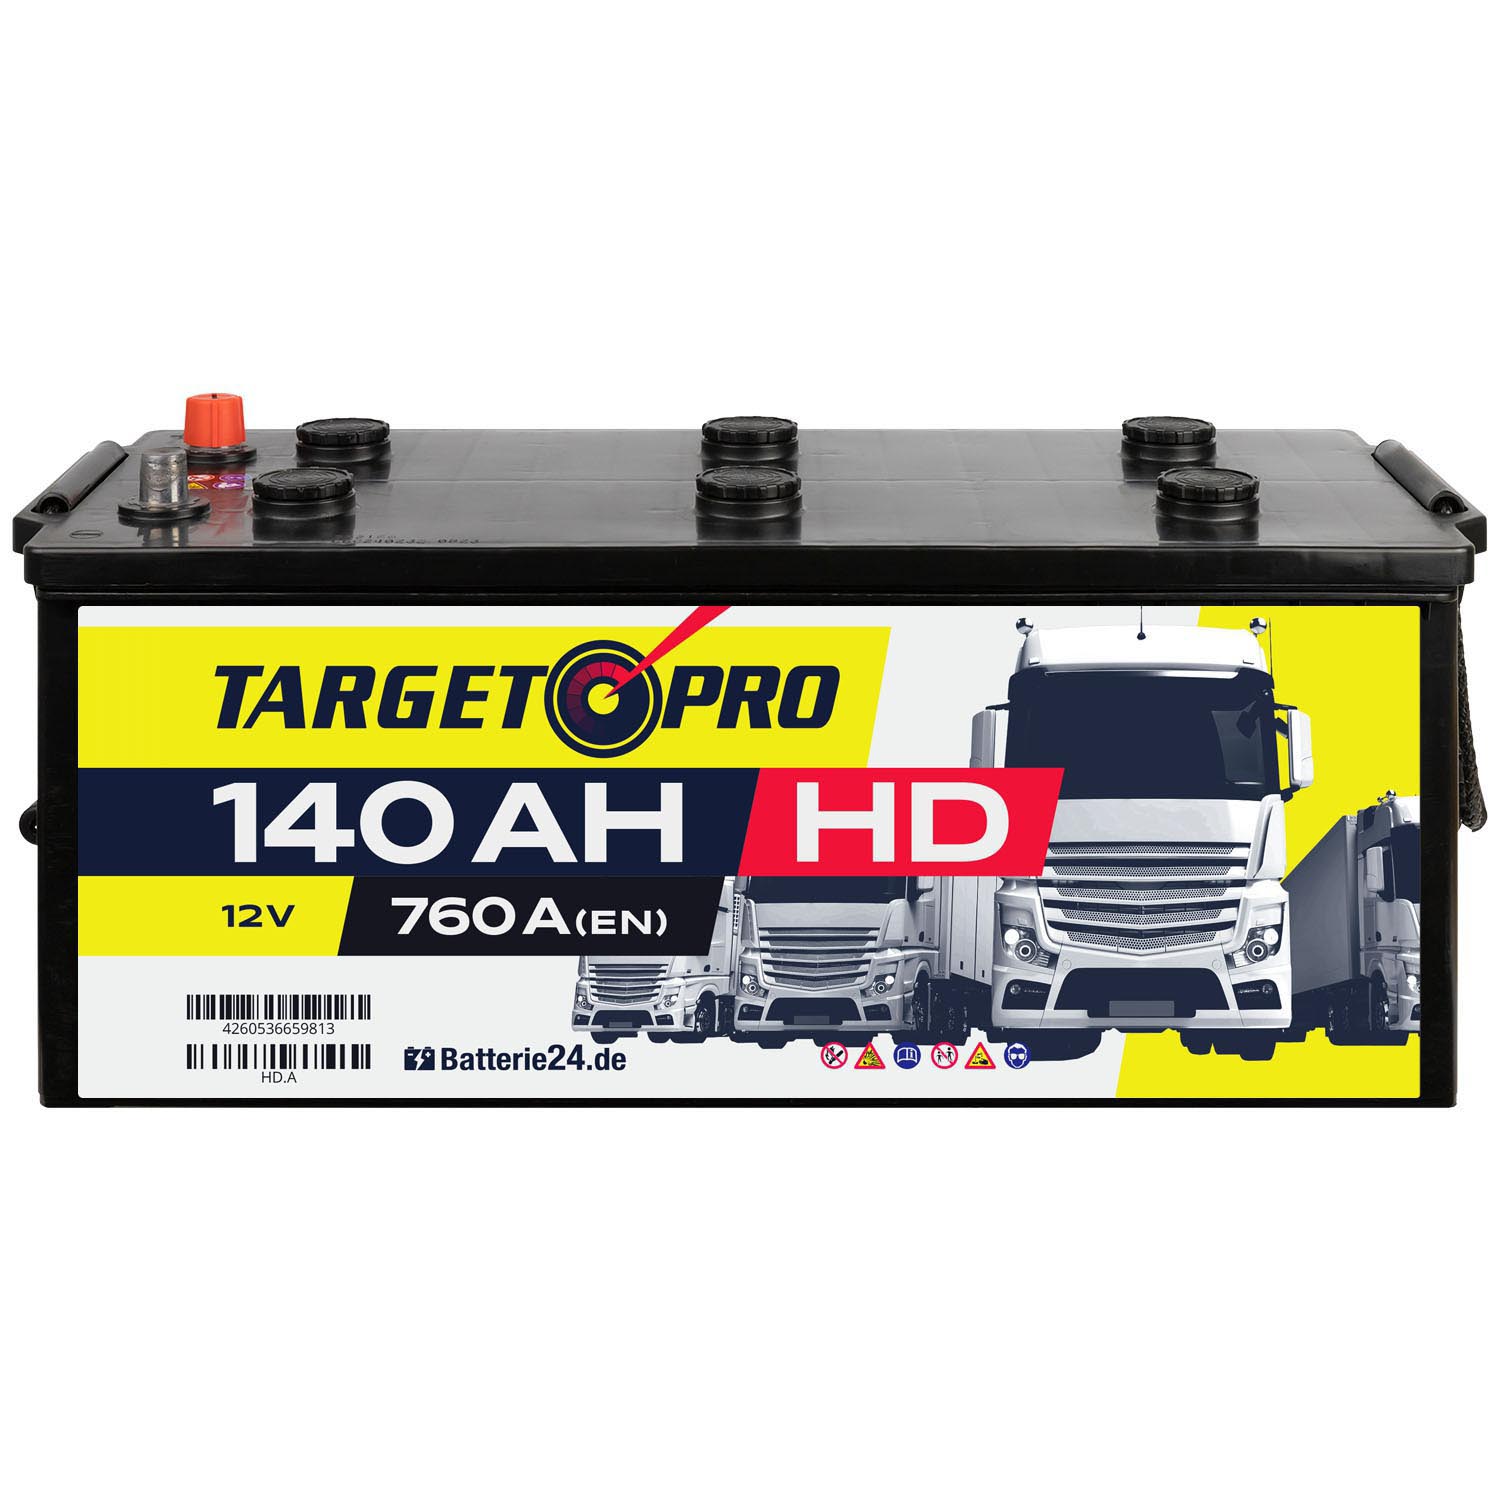 Target Pro HD 12V 140Ah LKW Batterie